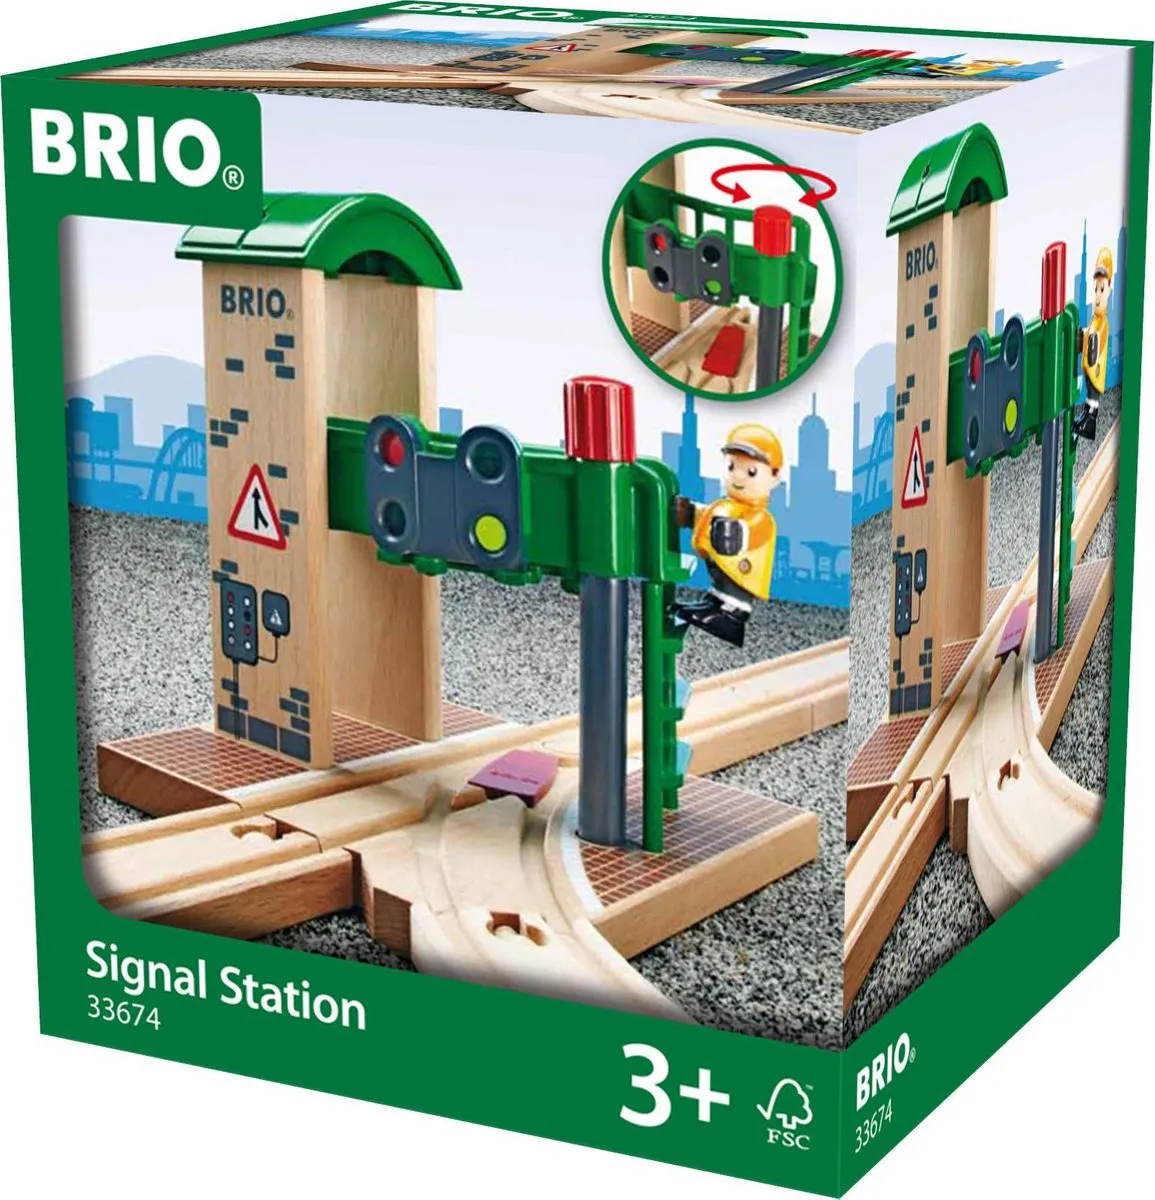 BRIO Seinstation - 33674 speelgoed